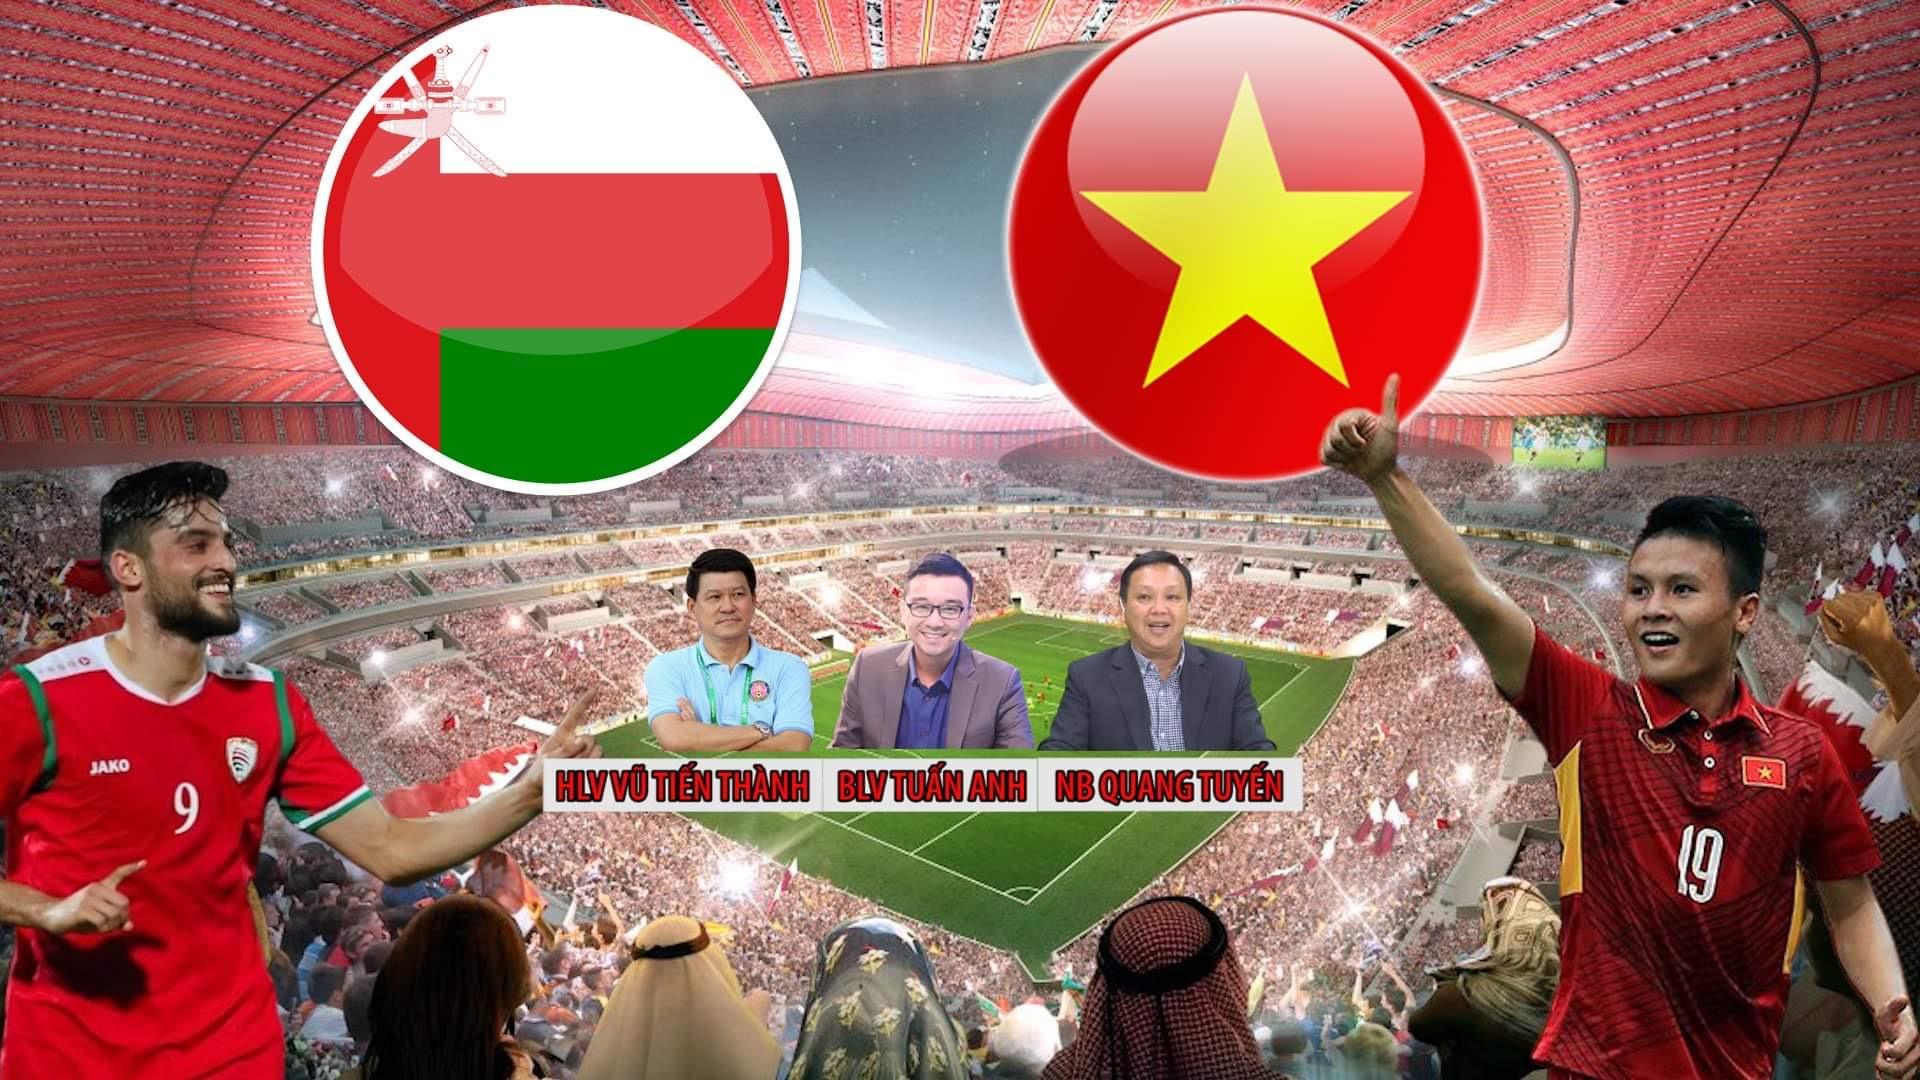 Theo dõi trực tiếp bình luận của Thanh Niên TV về trận đấu giữa đội tuyển Việt Nam và Oman để có những phân tích và nhận định chính xác nhất. Họ sẽ không chỉ thông báo về diễn biến của trận đấu, mà còn những thông tin về các cầu thủ, các khuấy động trên khán đài và hơn thế nữa.